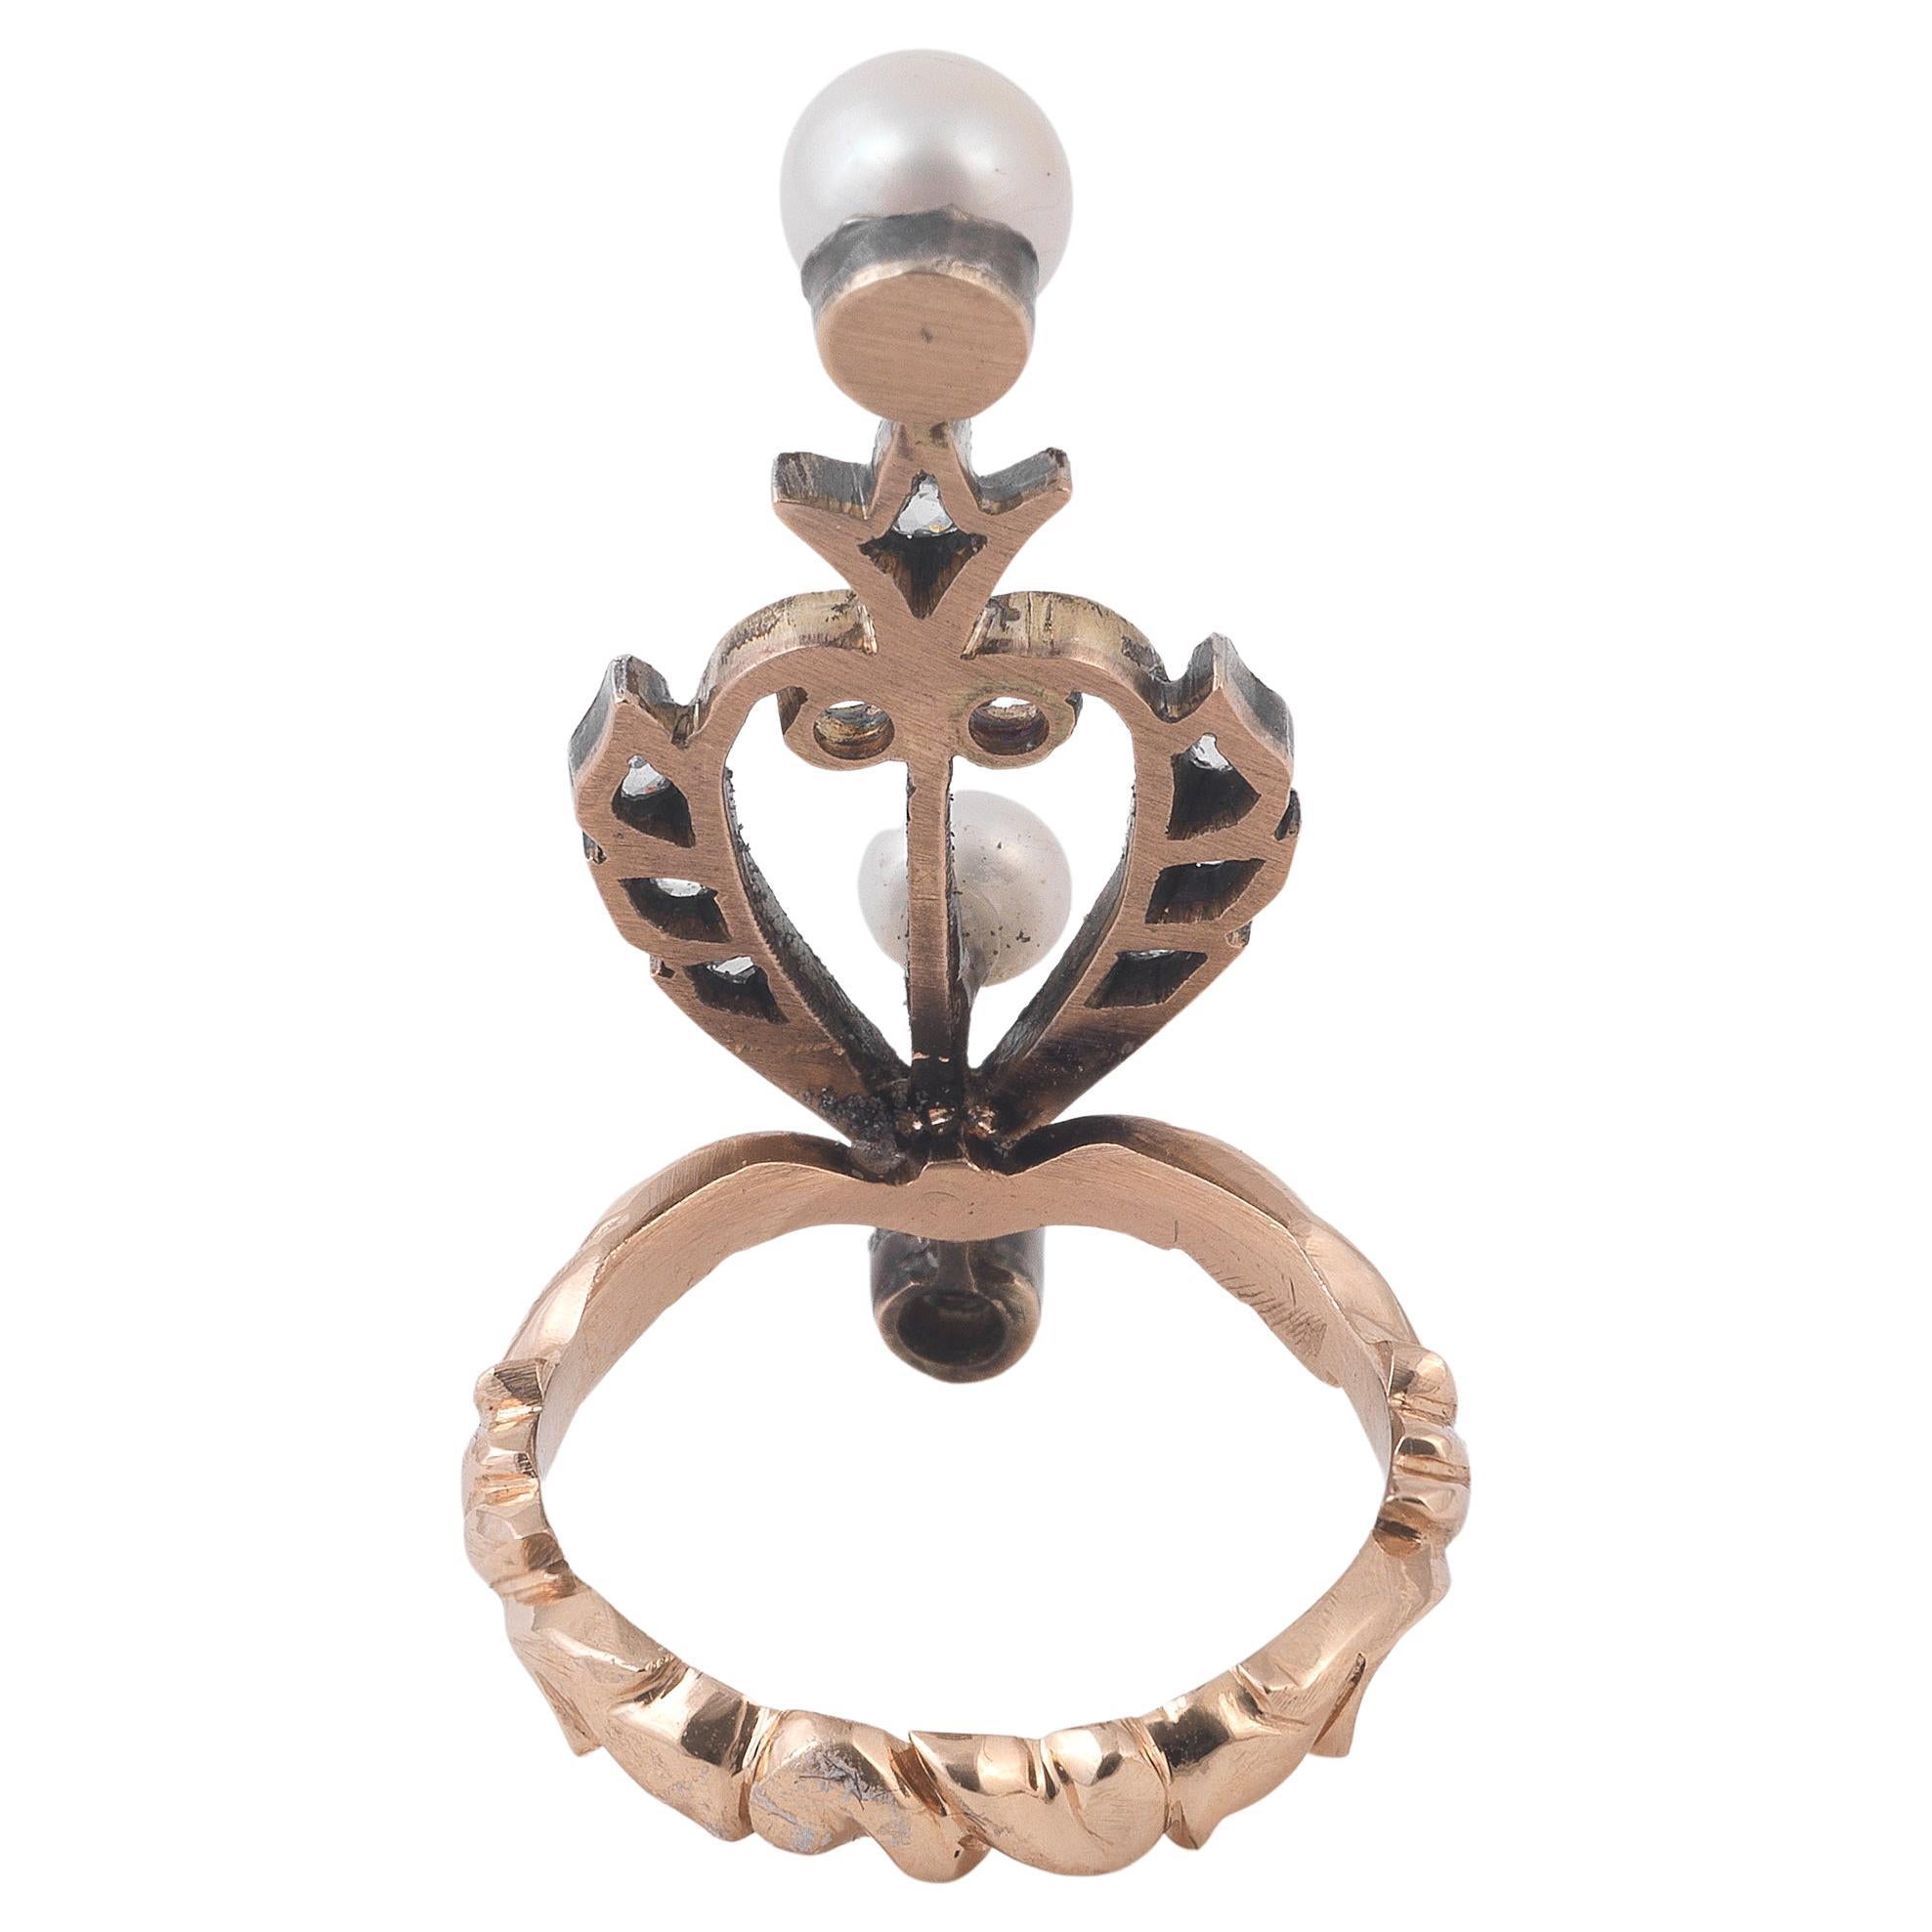 Blattförmiges Design, durchgehend mit Diamanten im Rosenschliff und einer 6,0 mm großen Perle besetzt, in Silber und Gold montiert, Perle ungeprüft, Ringgröße 7